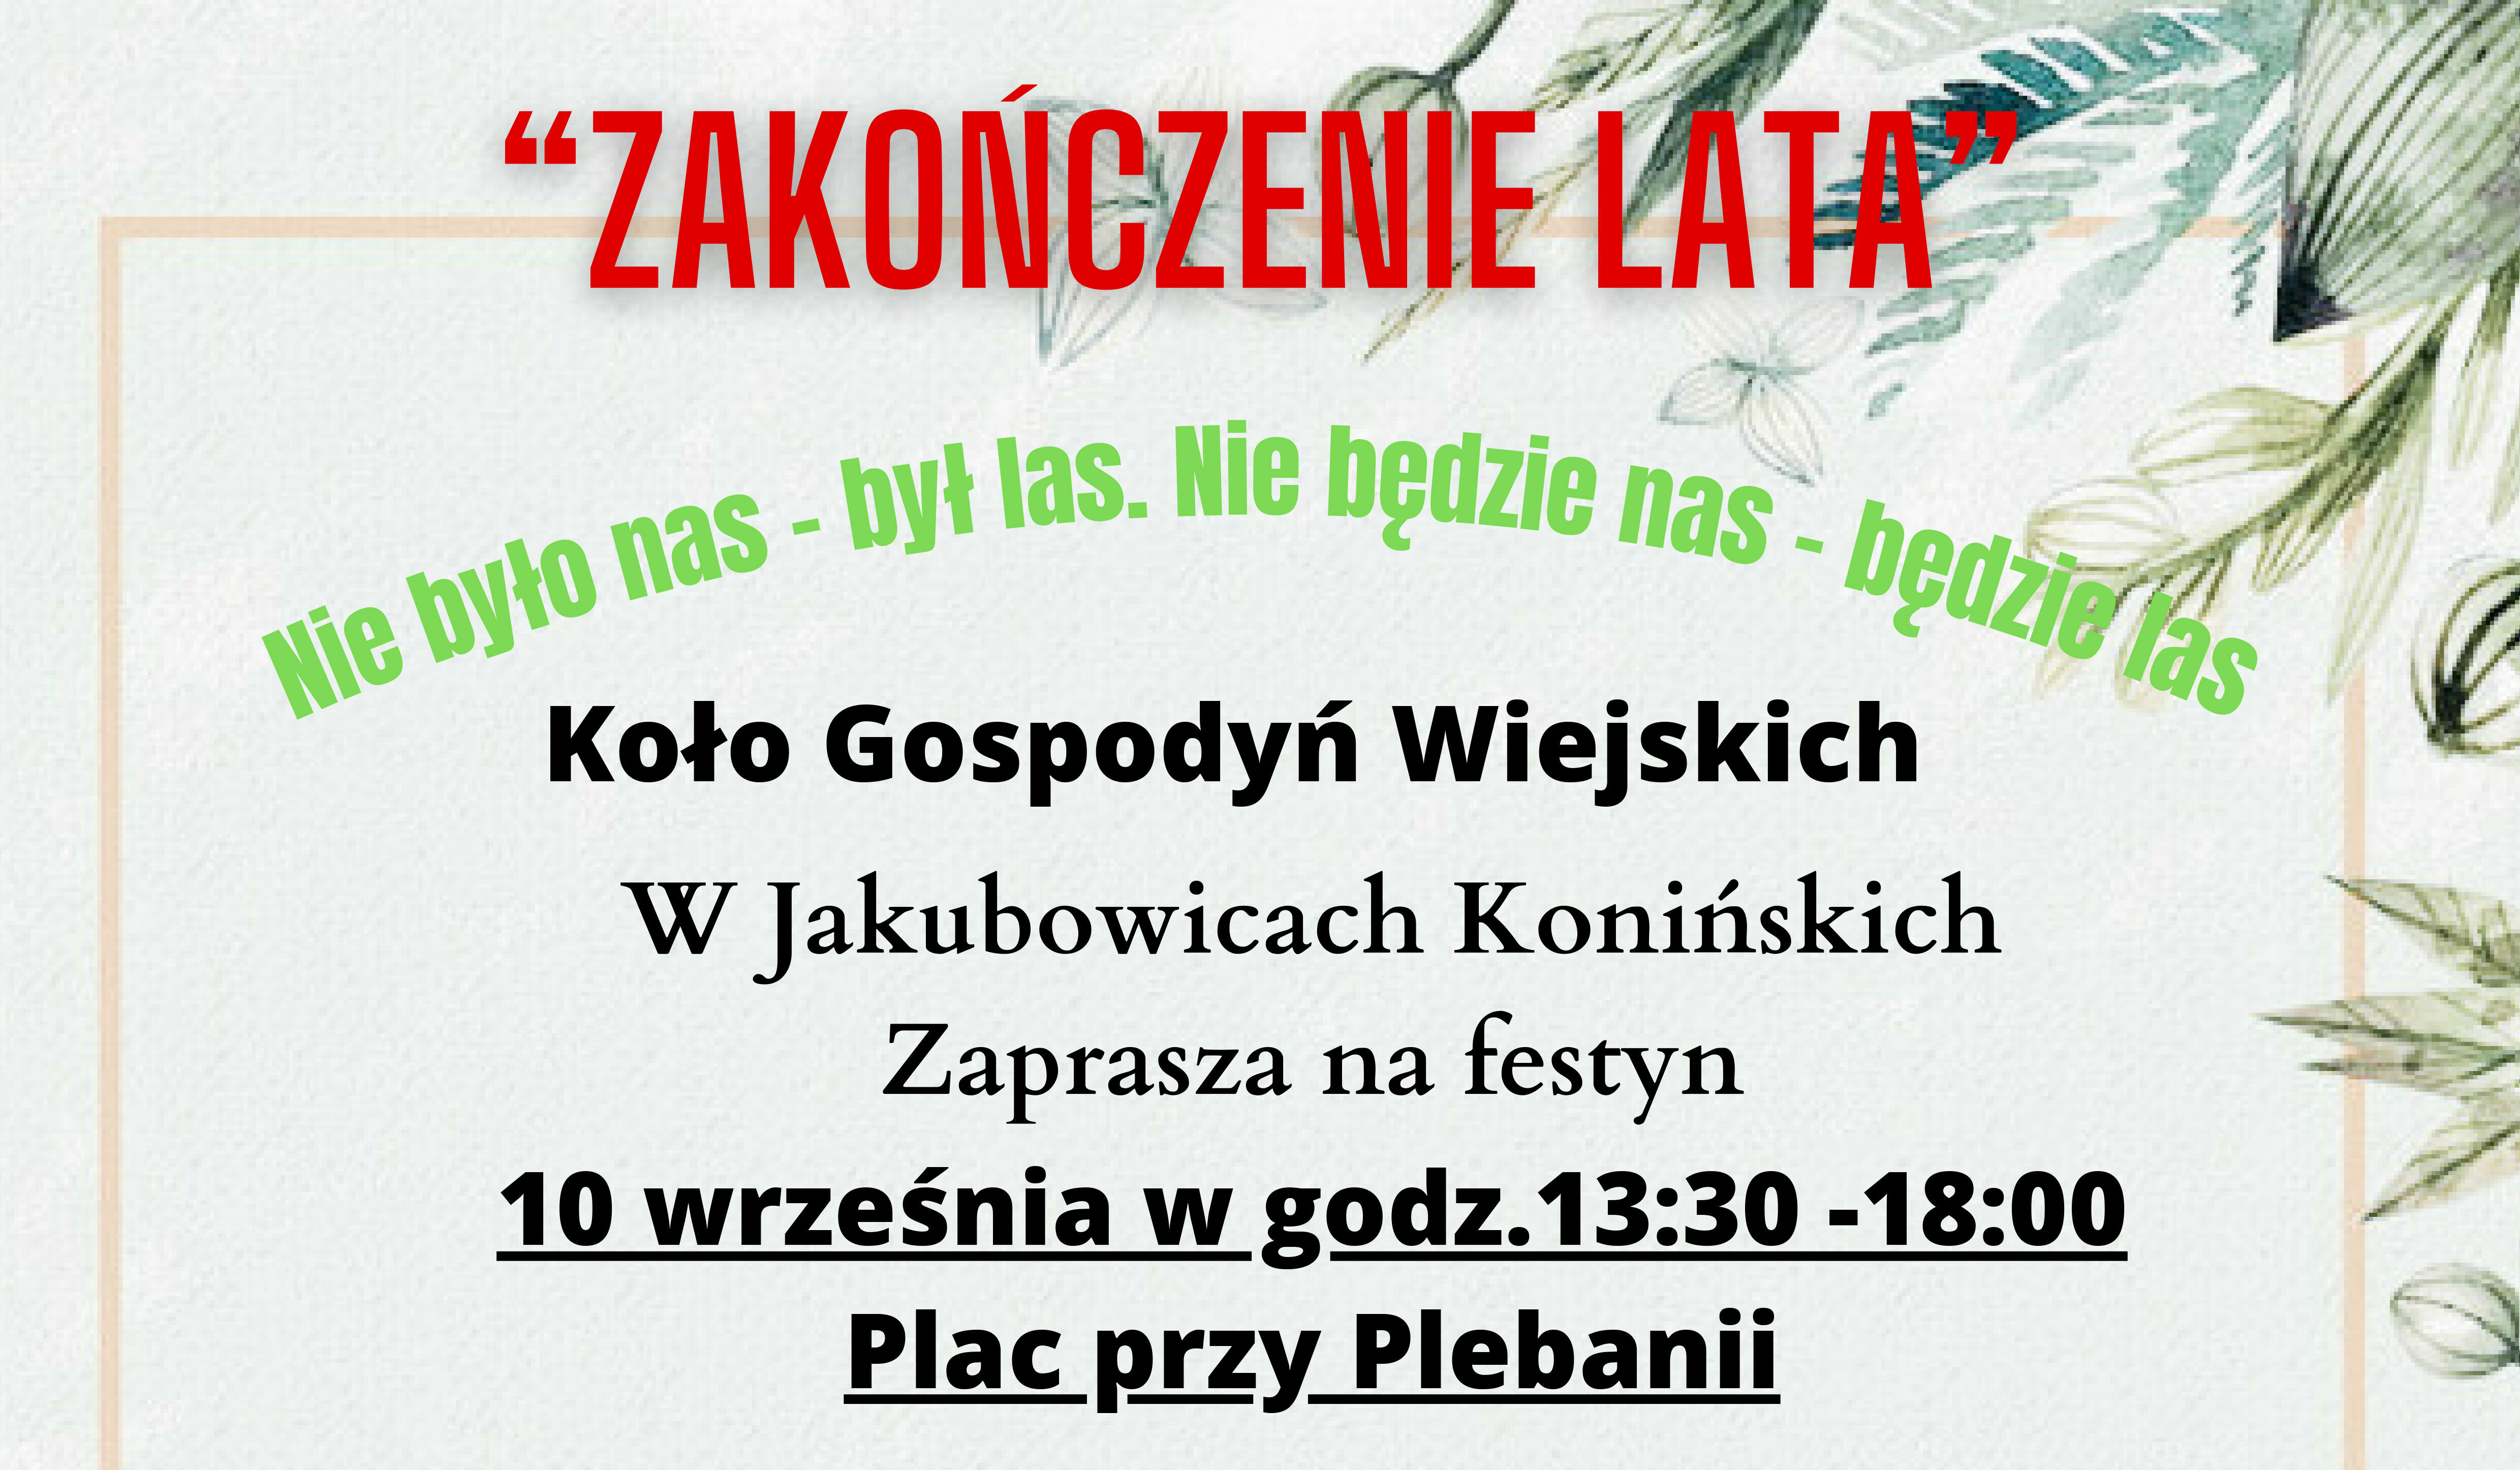 Zaproszenie do Jakubowic Konińskich na festyn